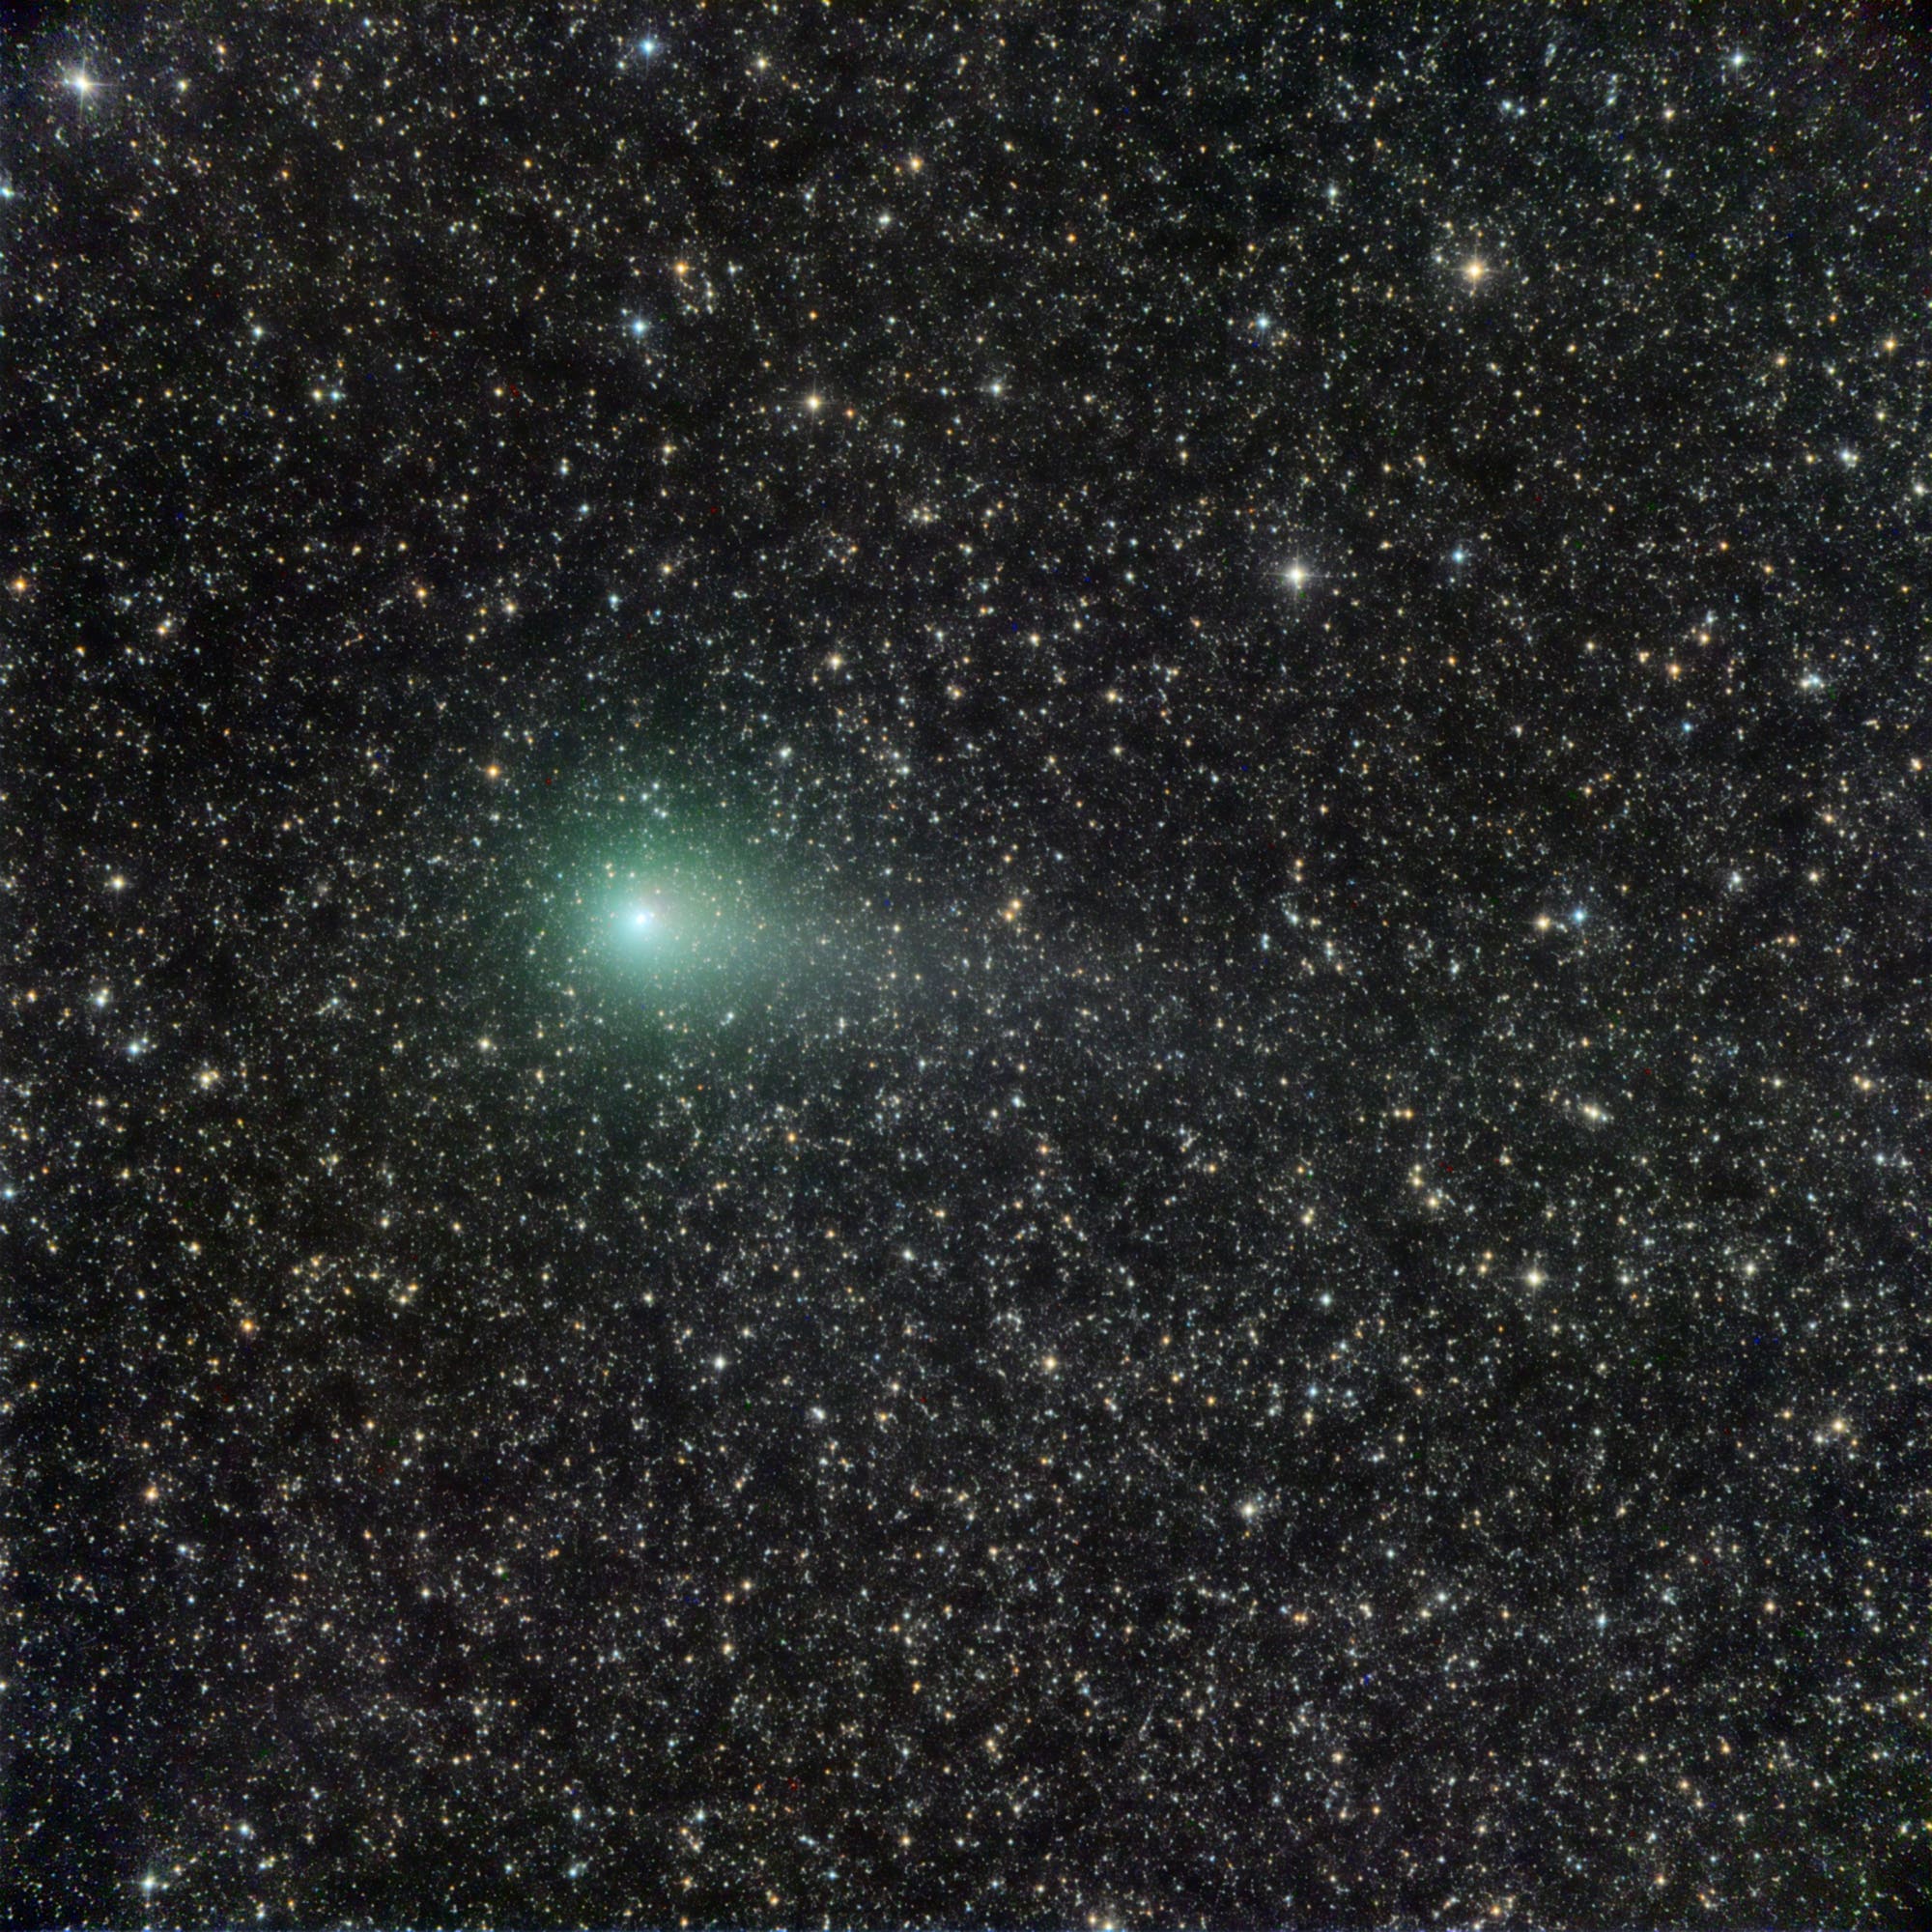 Comet C/2016 M1 PANSTARRS at maximum